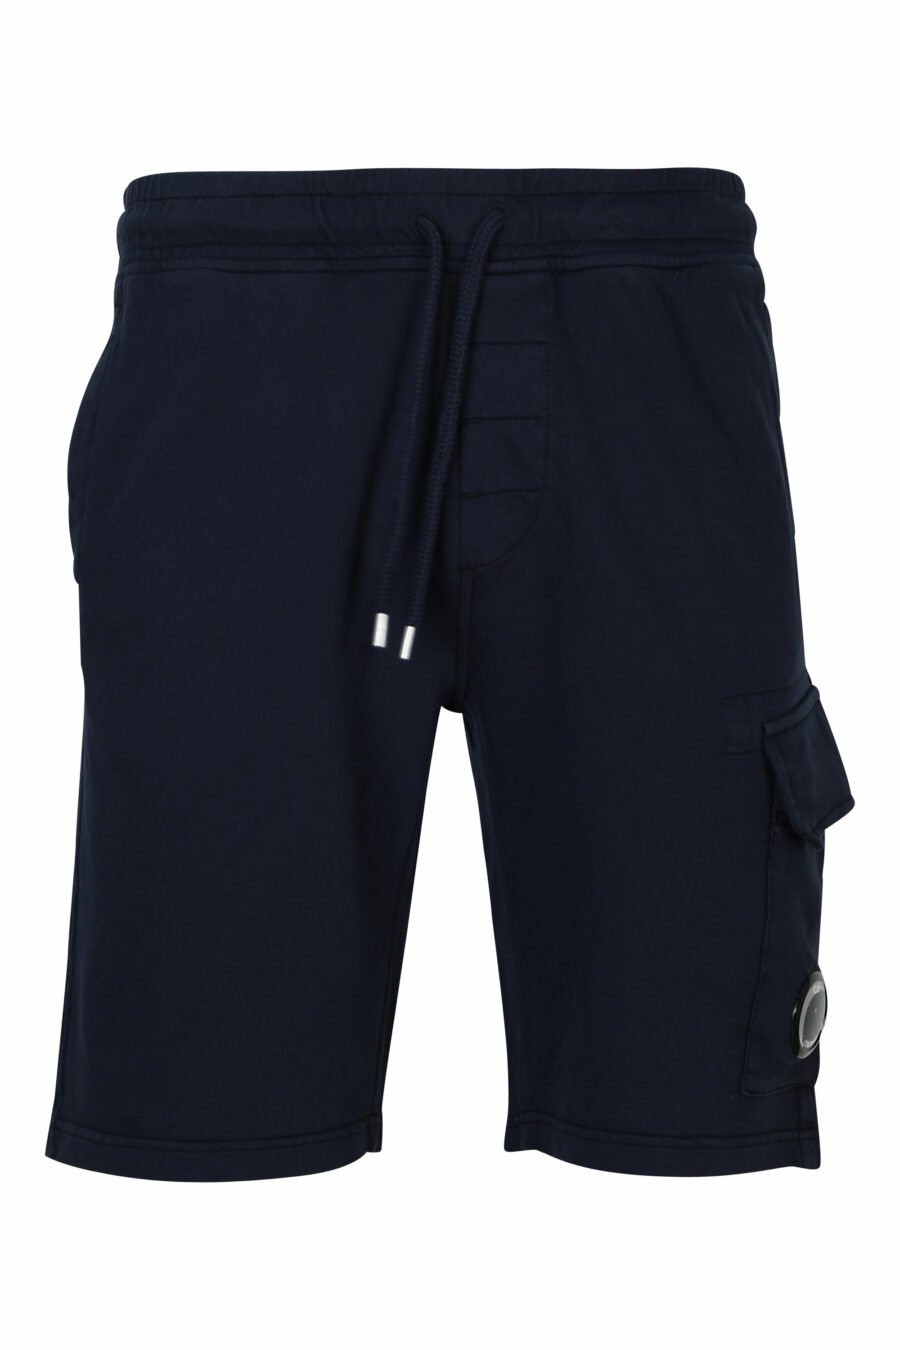 Pantalón de chándal corto azul oscuro estilo cargo con logo lente - 7620943730494